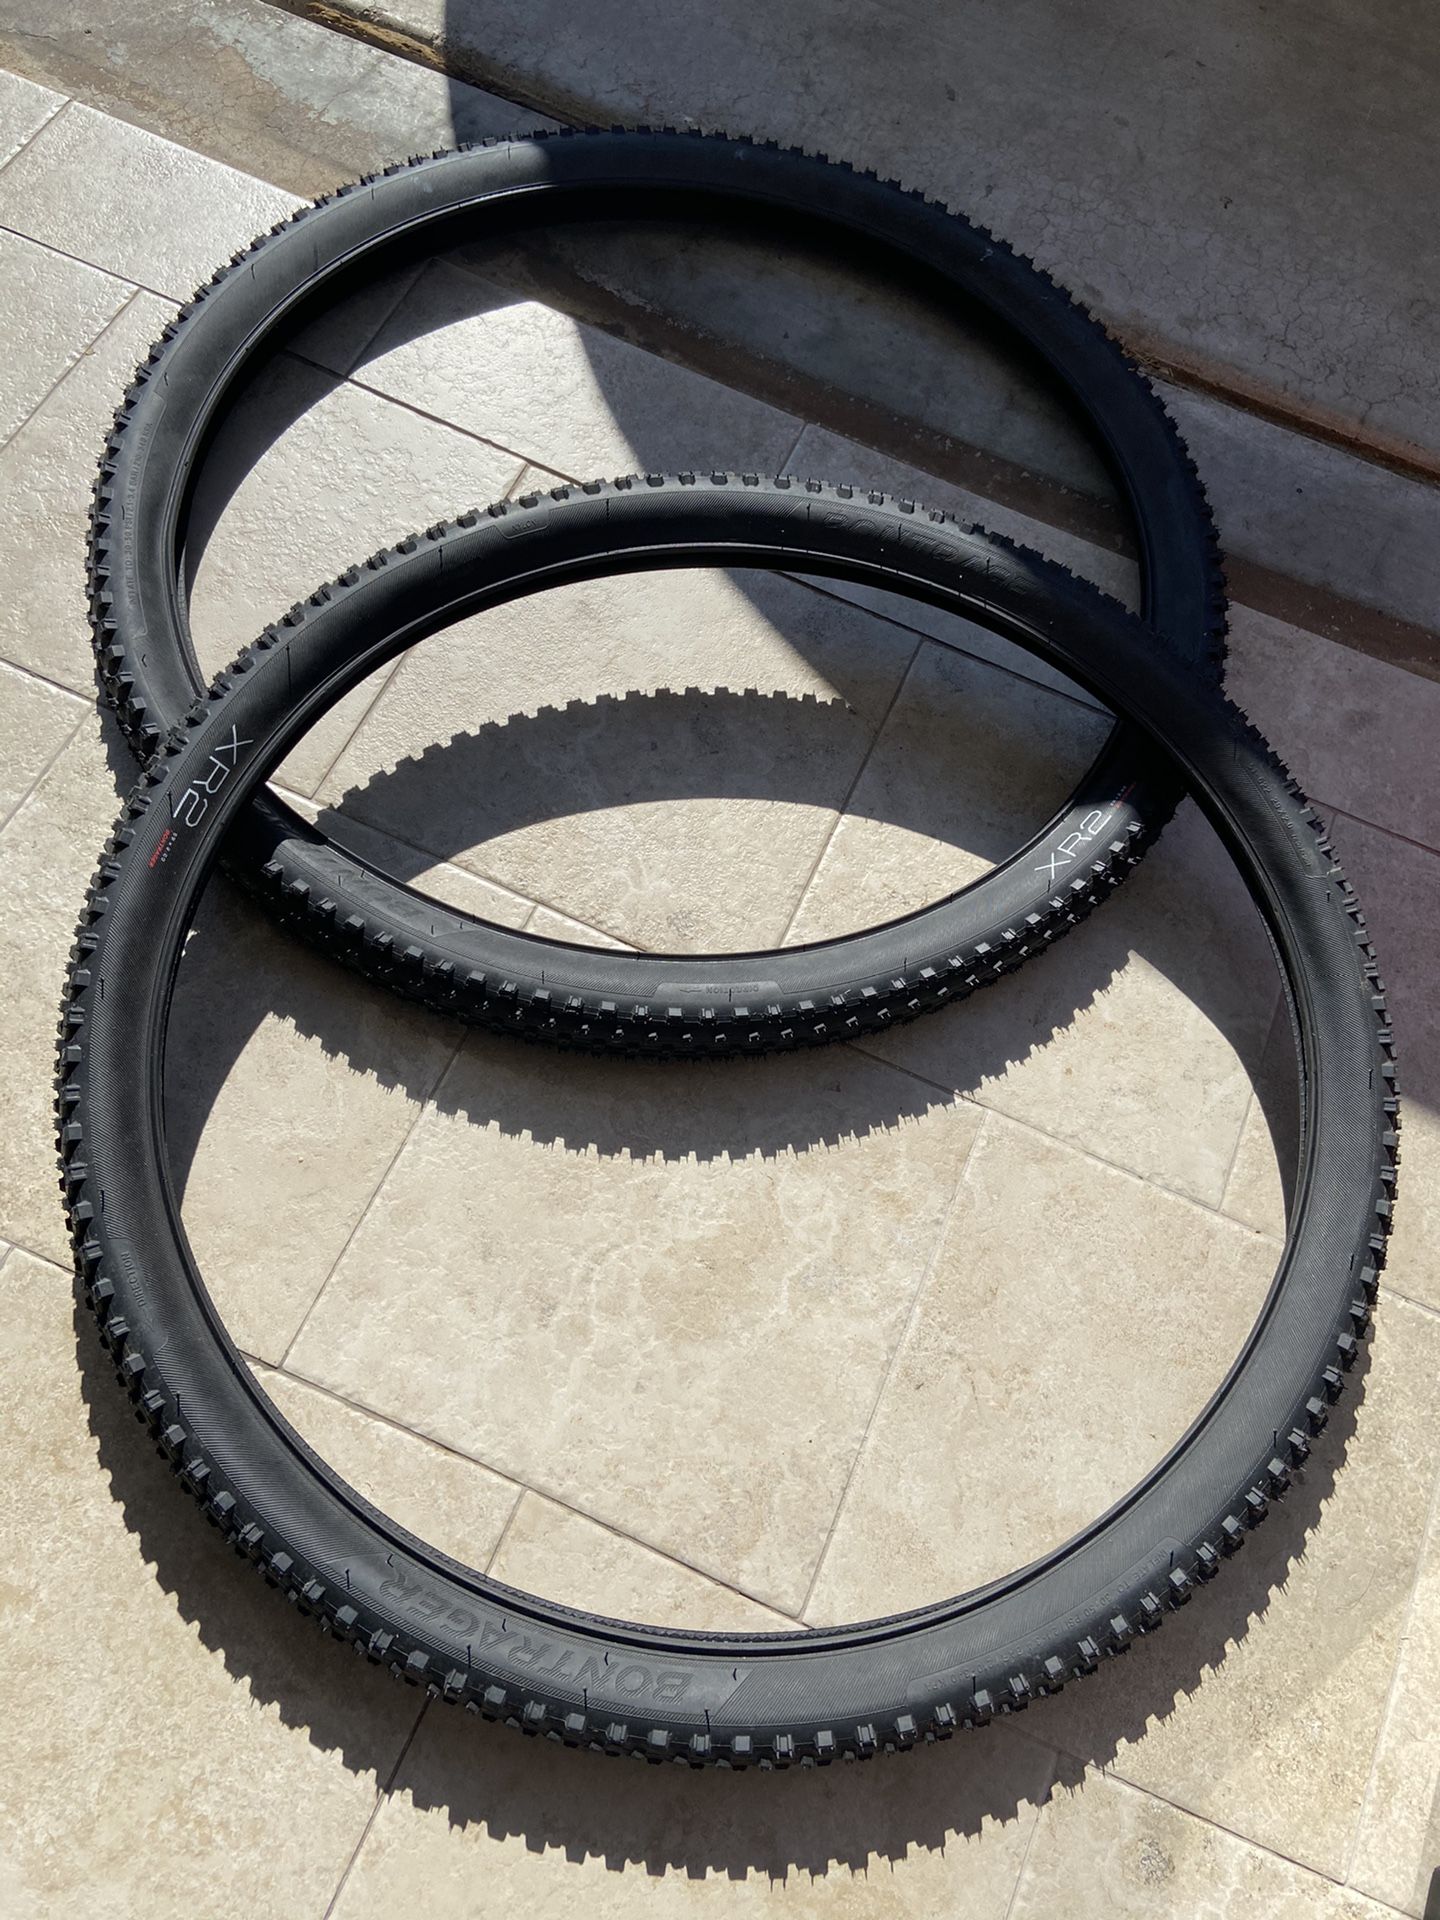 Bontrager XR2 29 “ Tires